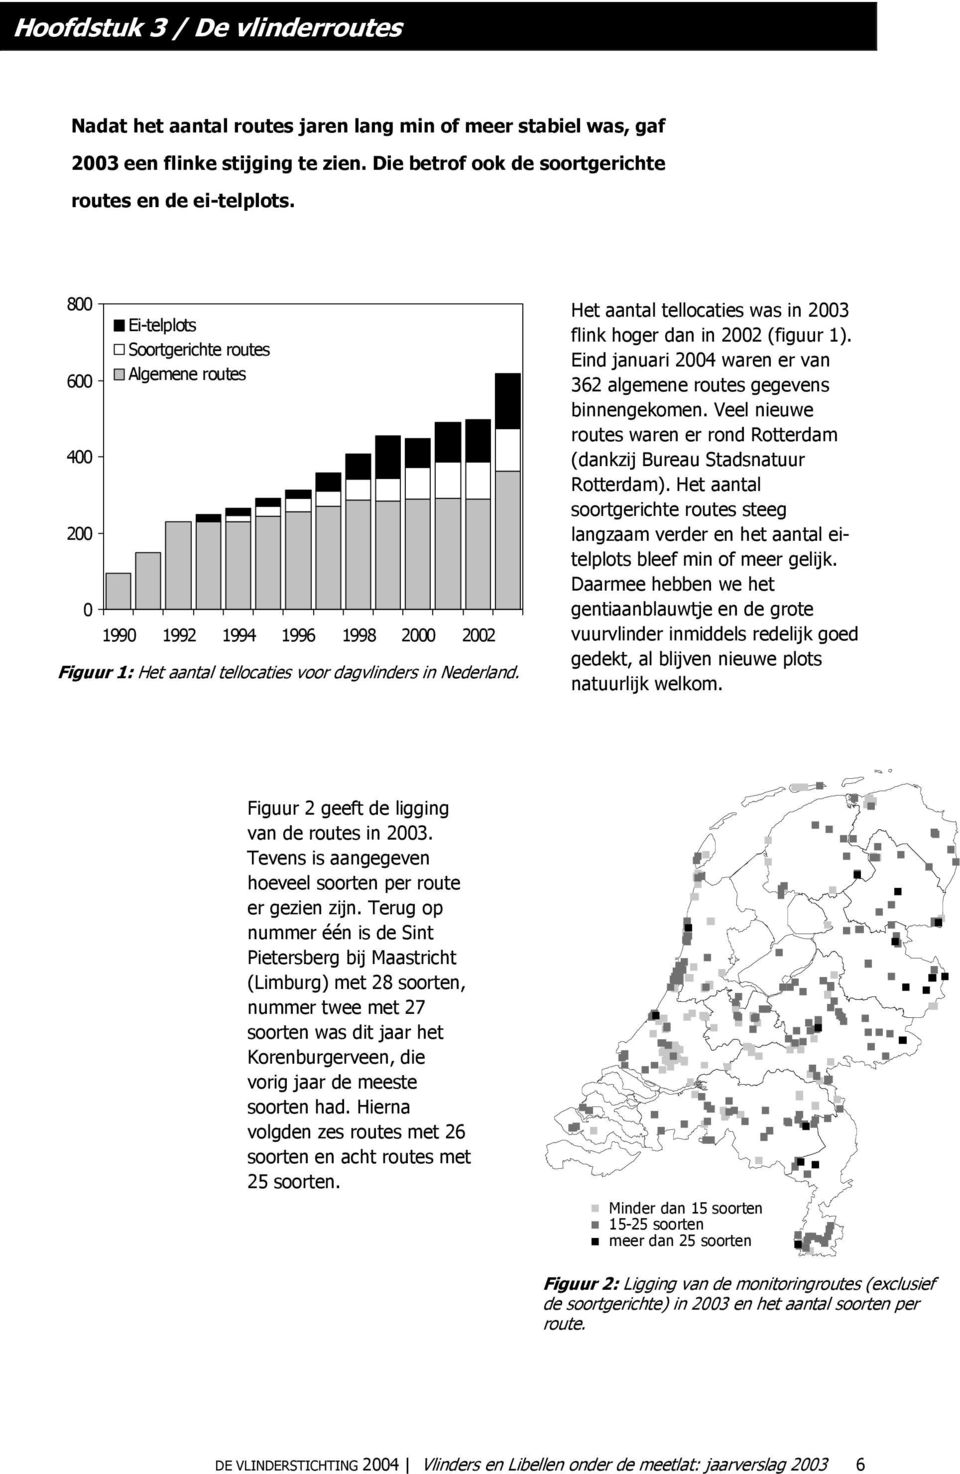 Eind januari 2004 waren er van 362 algemene routes gegevens binnengekomen. Veel nieuwe routes waren er rond Rotterdam (dankzij Bureau Stadsnatuur Rotterdam).